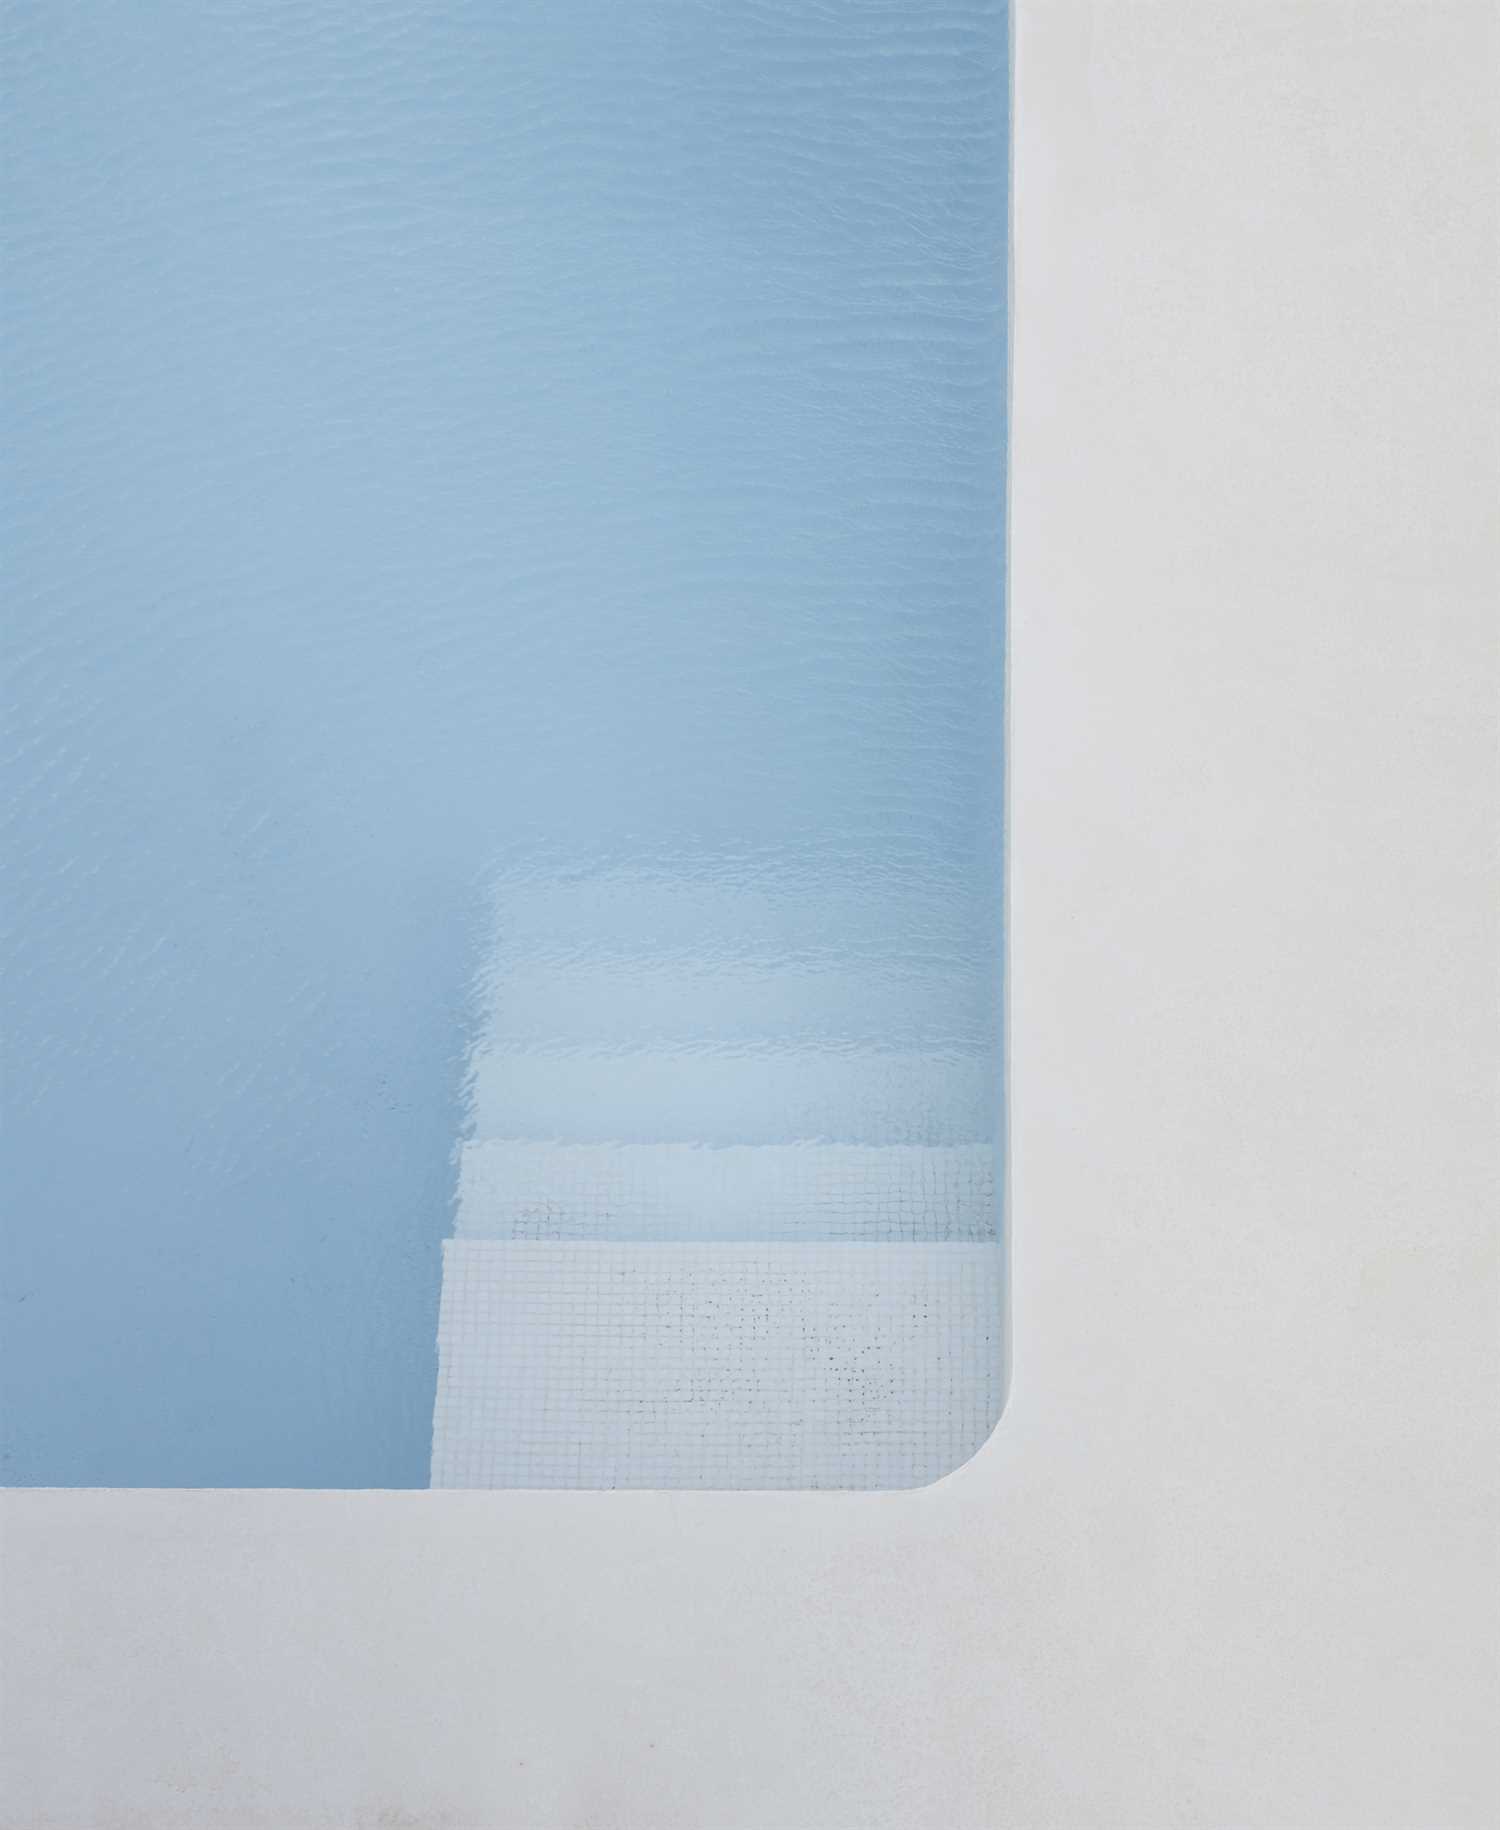 Witte microcement zwembad in gerenoveerd huis